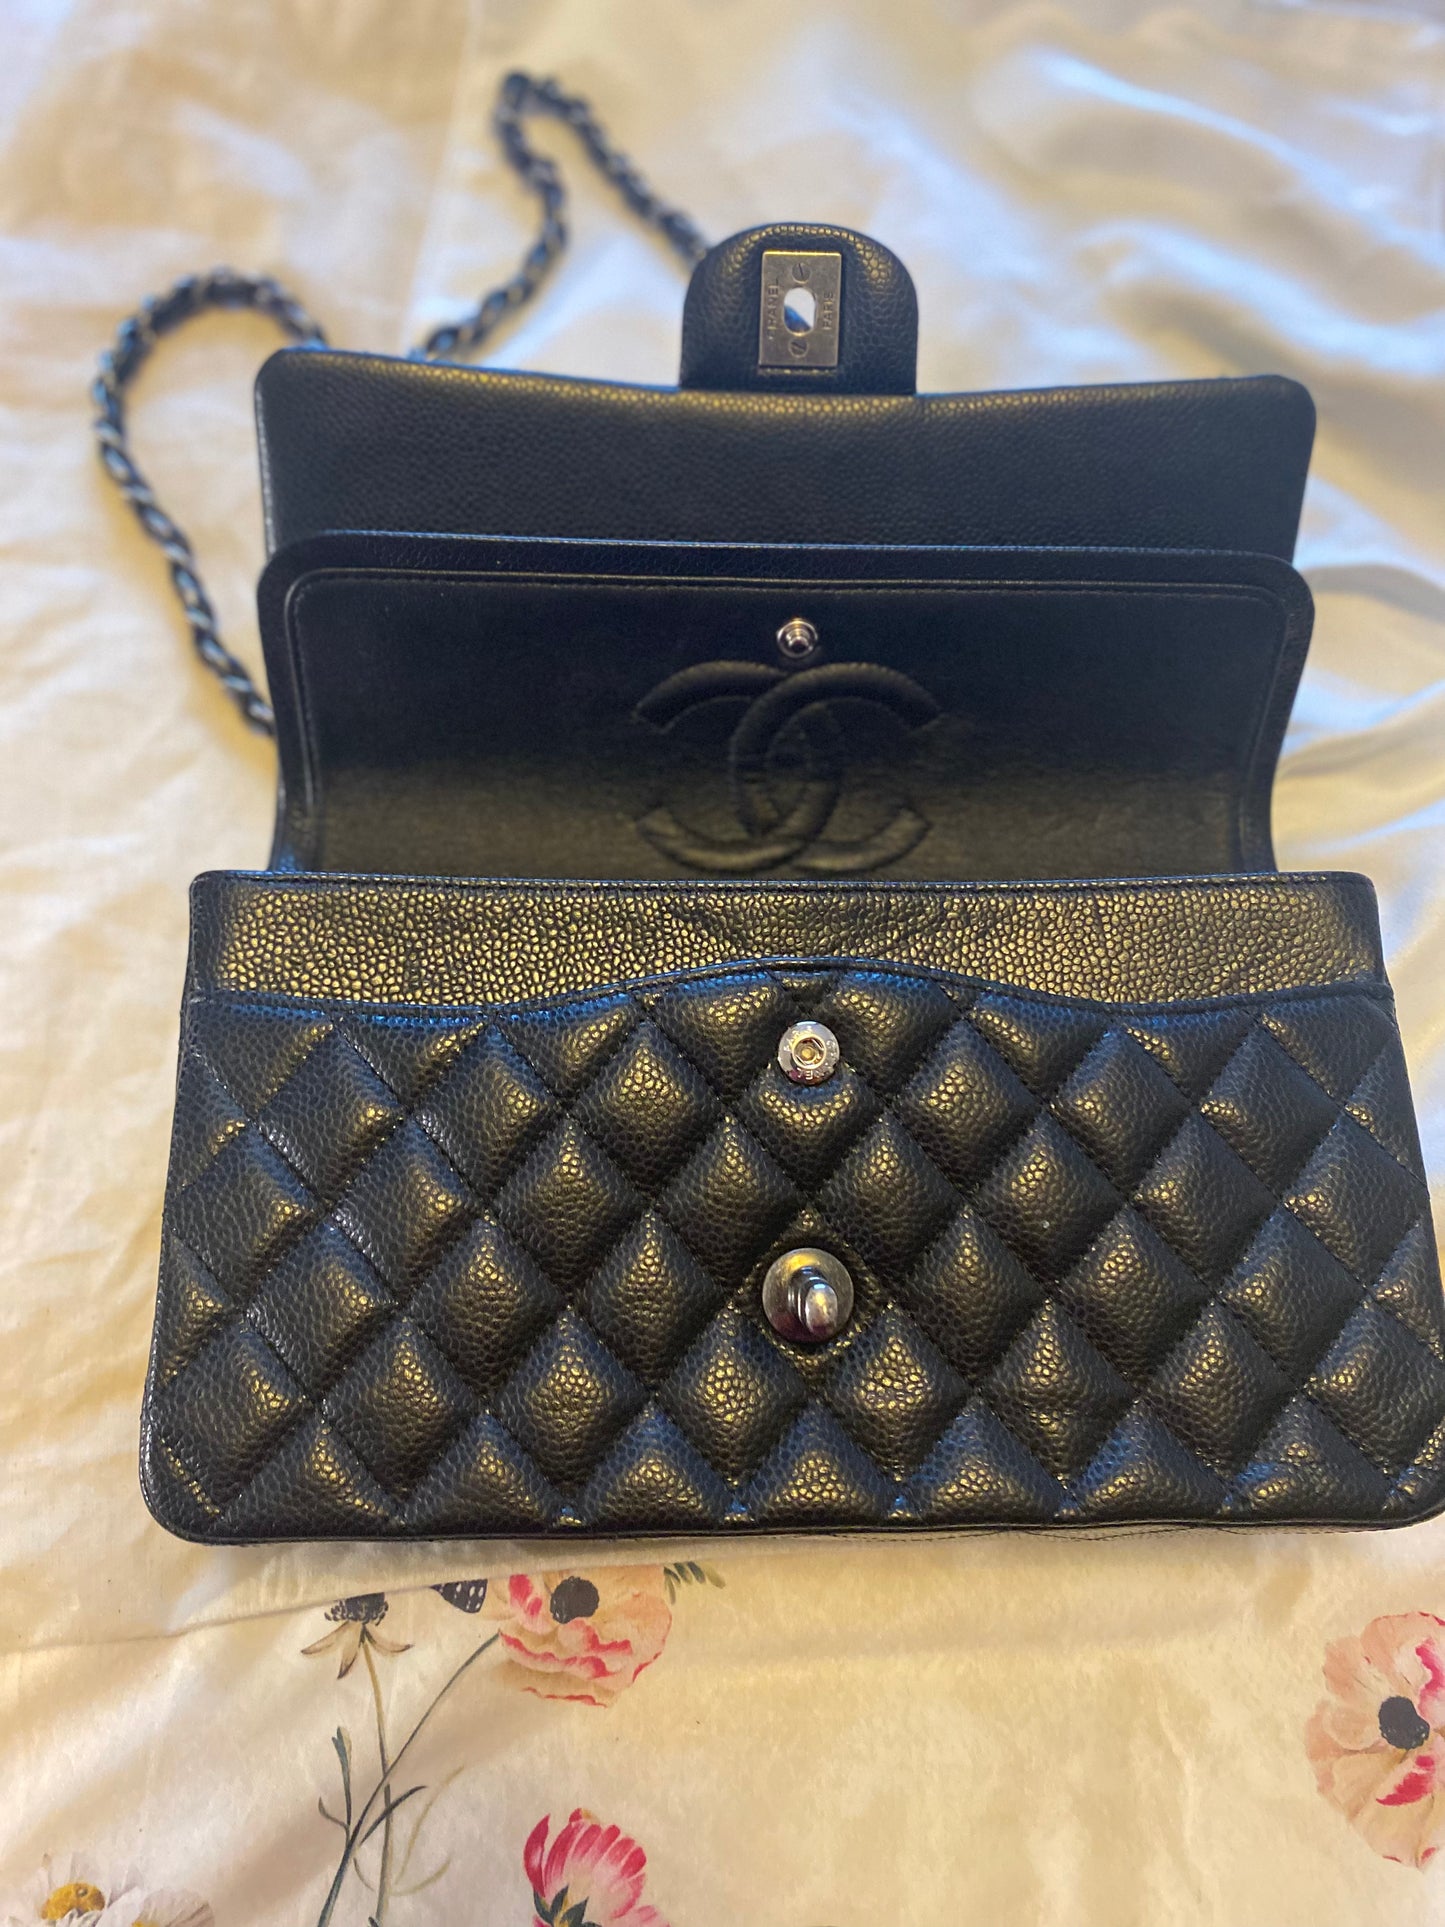 New Bag: Chanel Bag